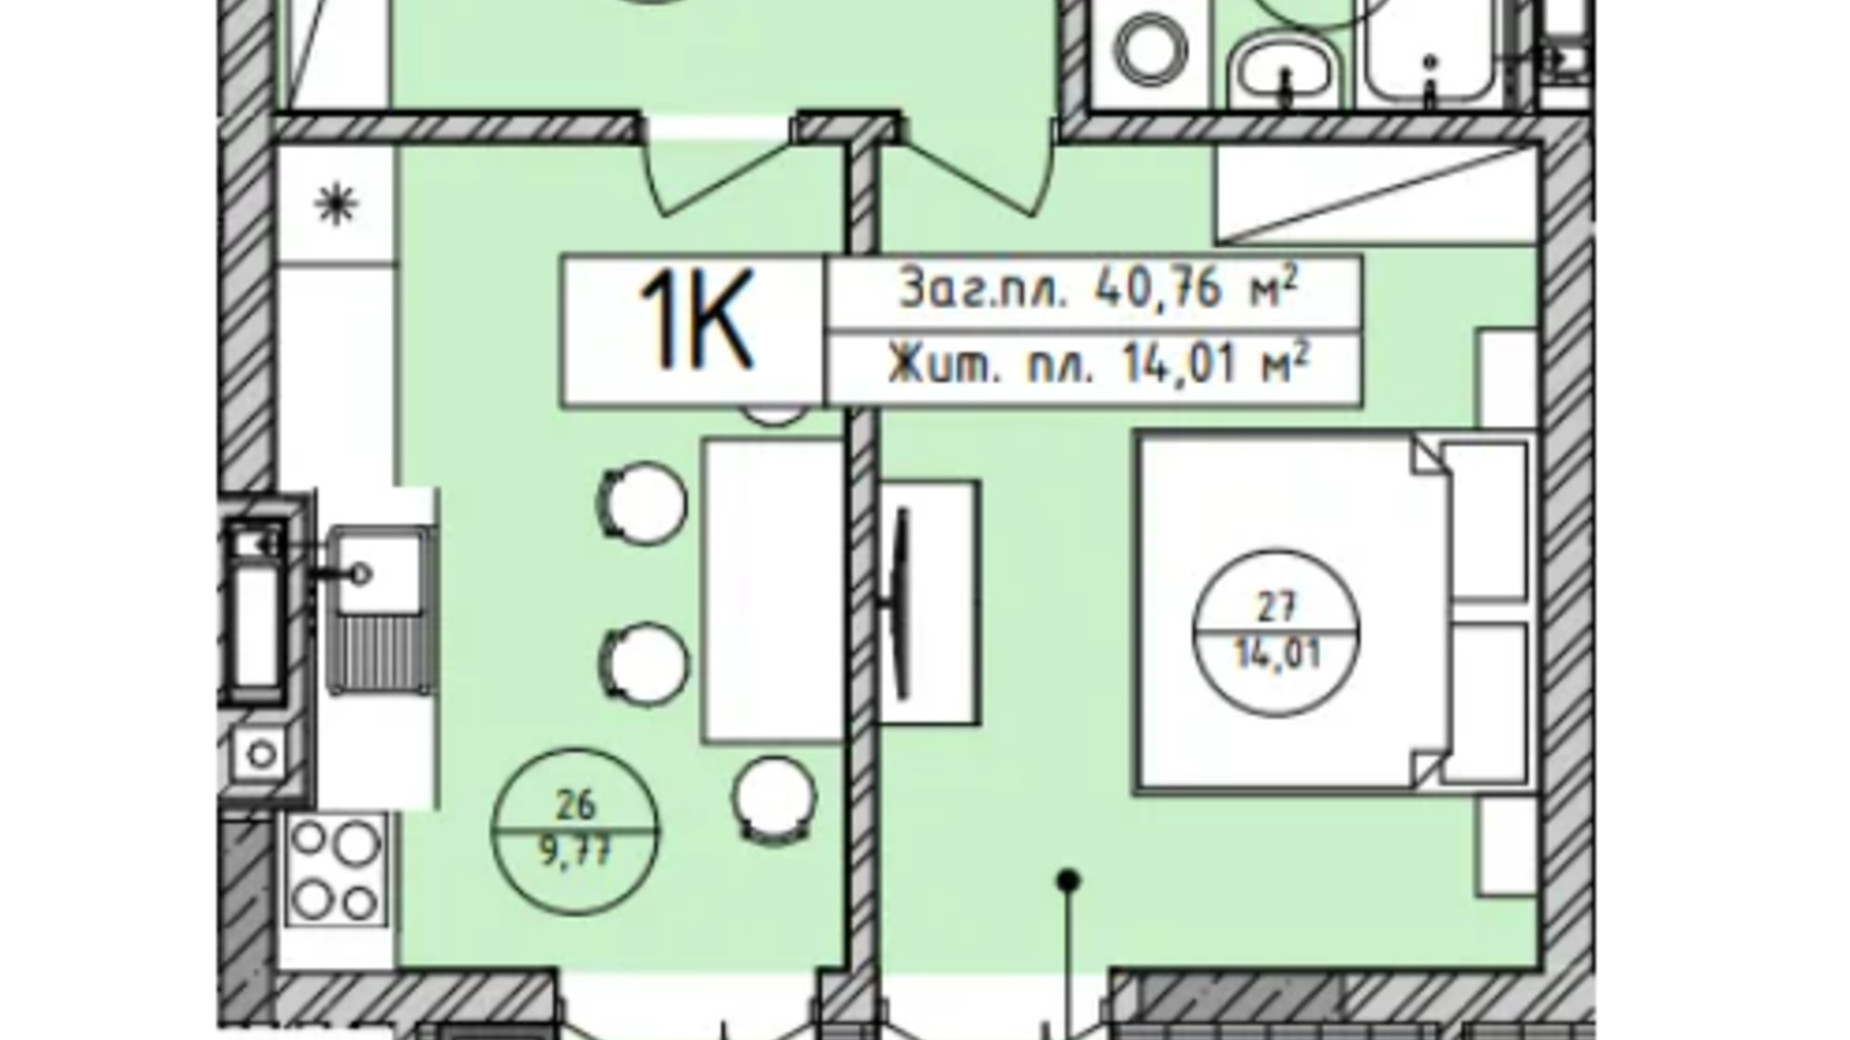 Планування 1-кімнатної квартири в ЖК Лісова Оселя 40.76 м², фото 722150